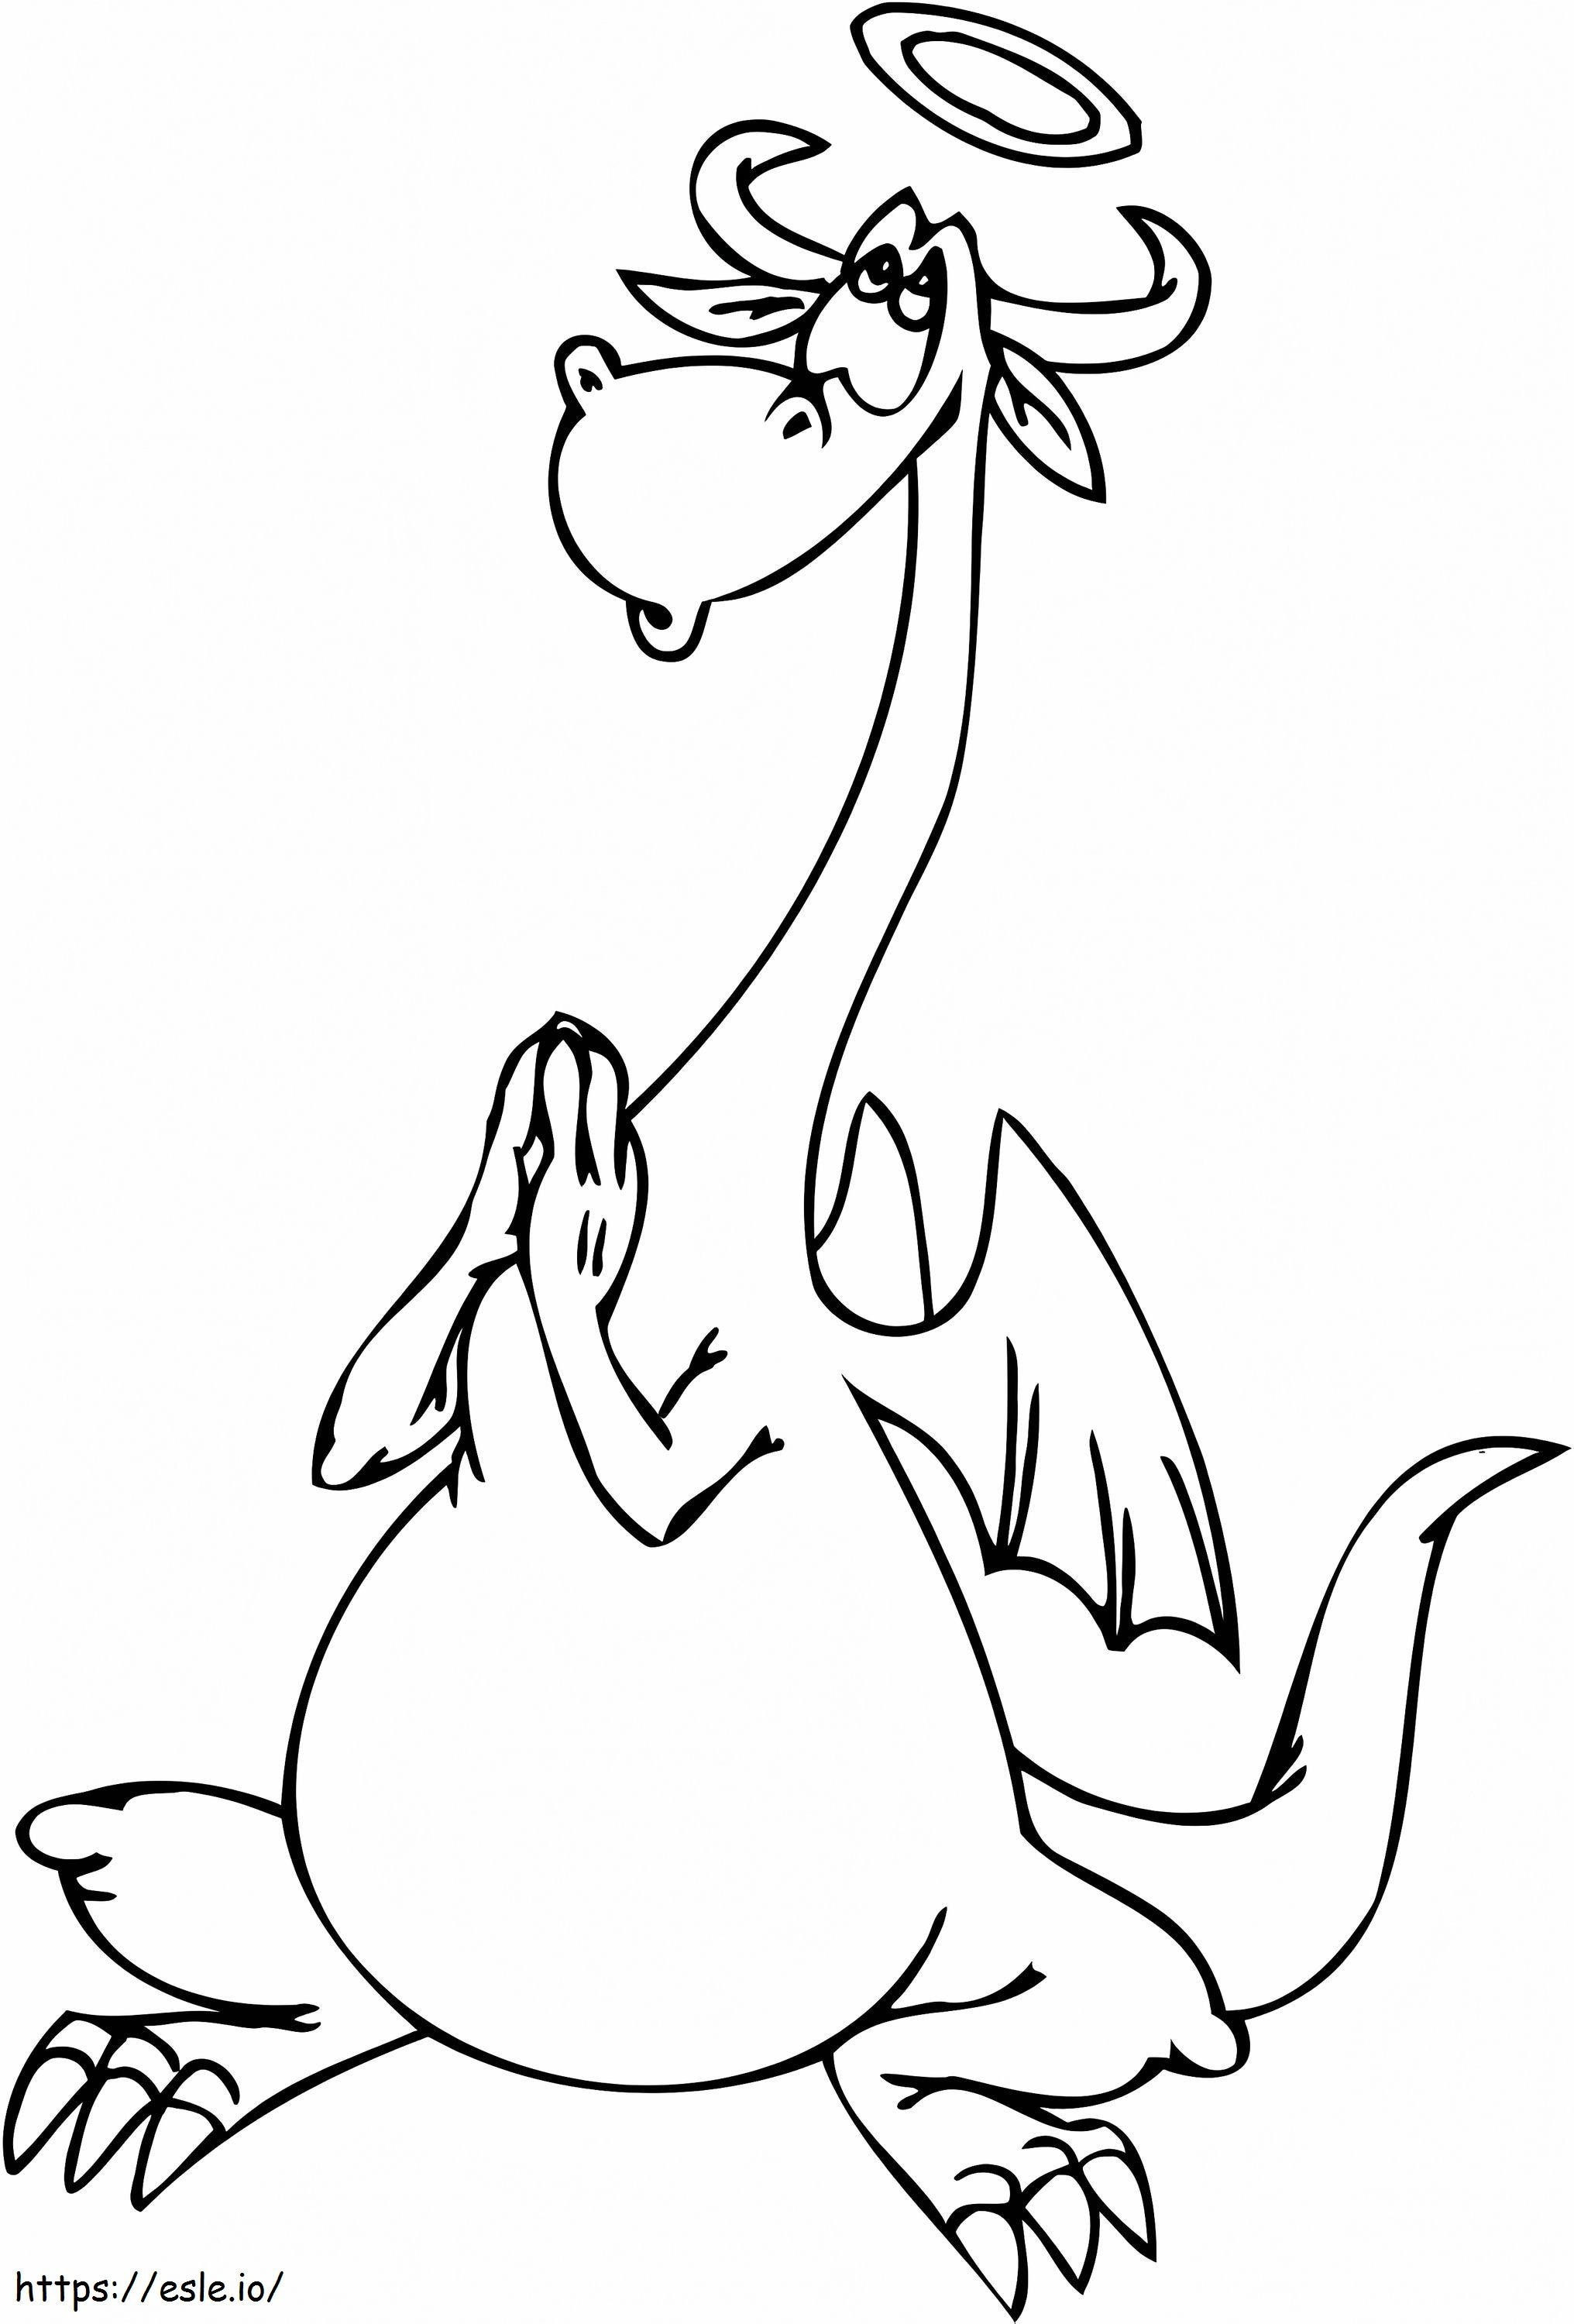 Coloriage Dragon prie à imprimer dessin